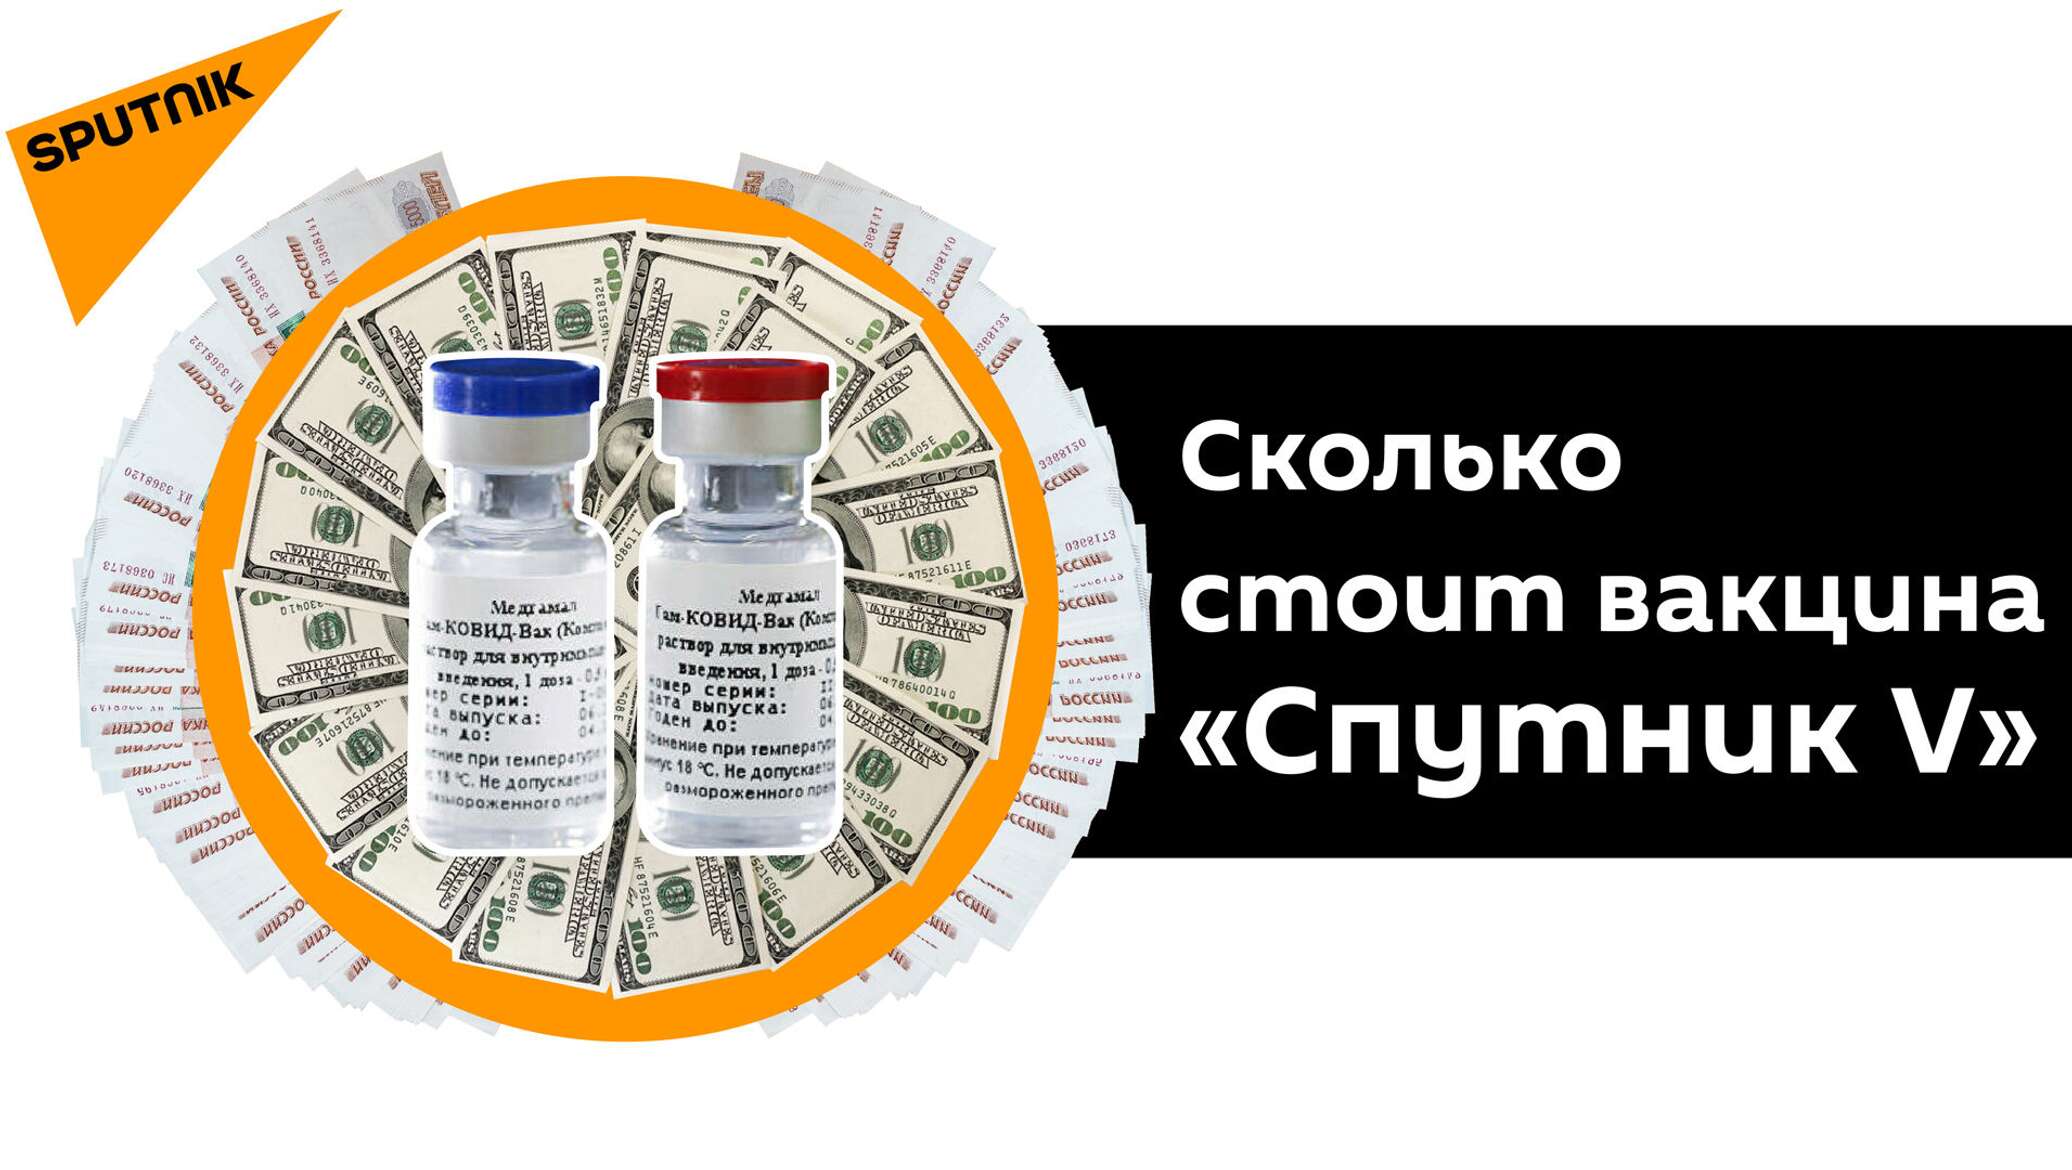 Вакцины 2020. Цены на лекарства Sputnik. Низкие цены на лекарства. Низкая стоимость препарата.